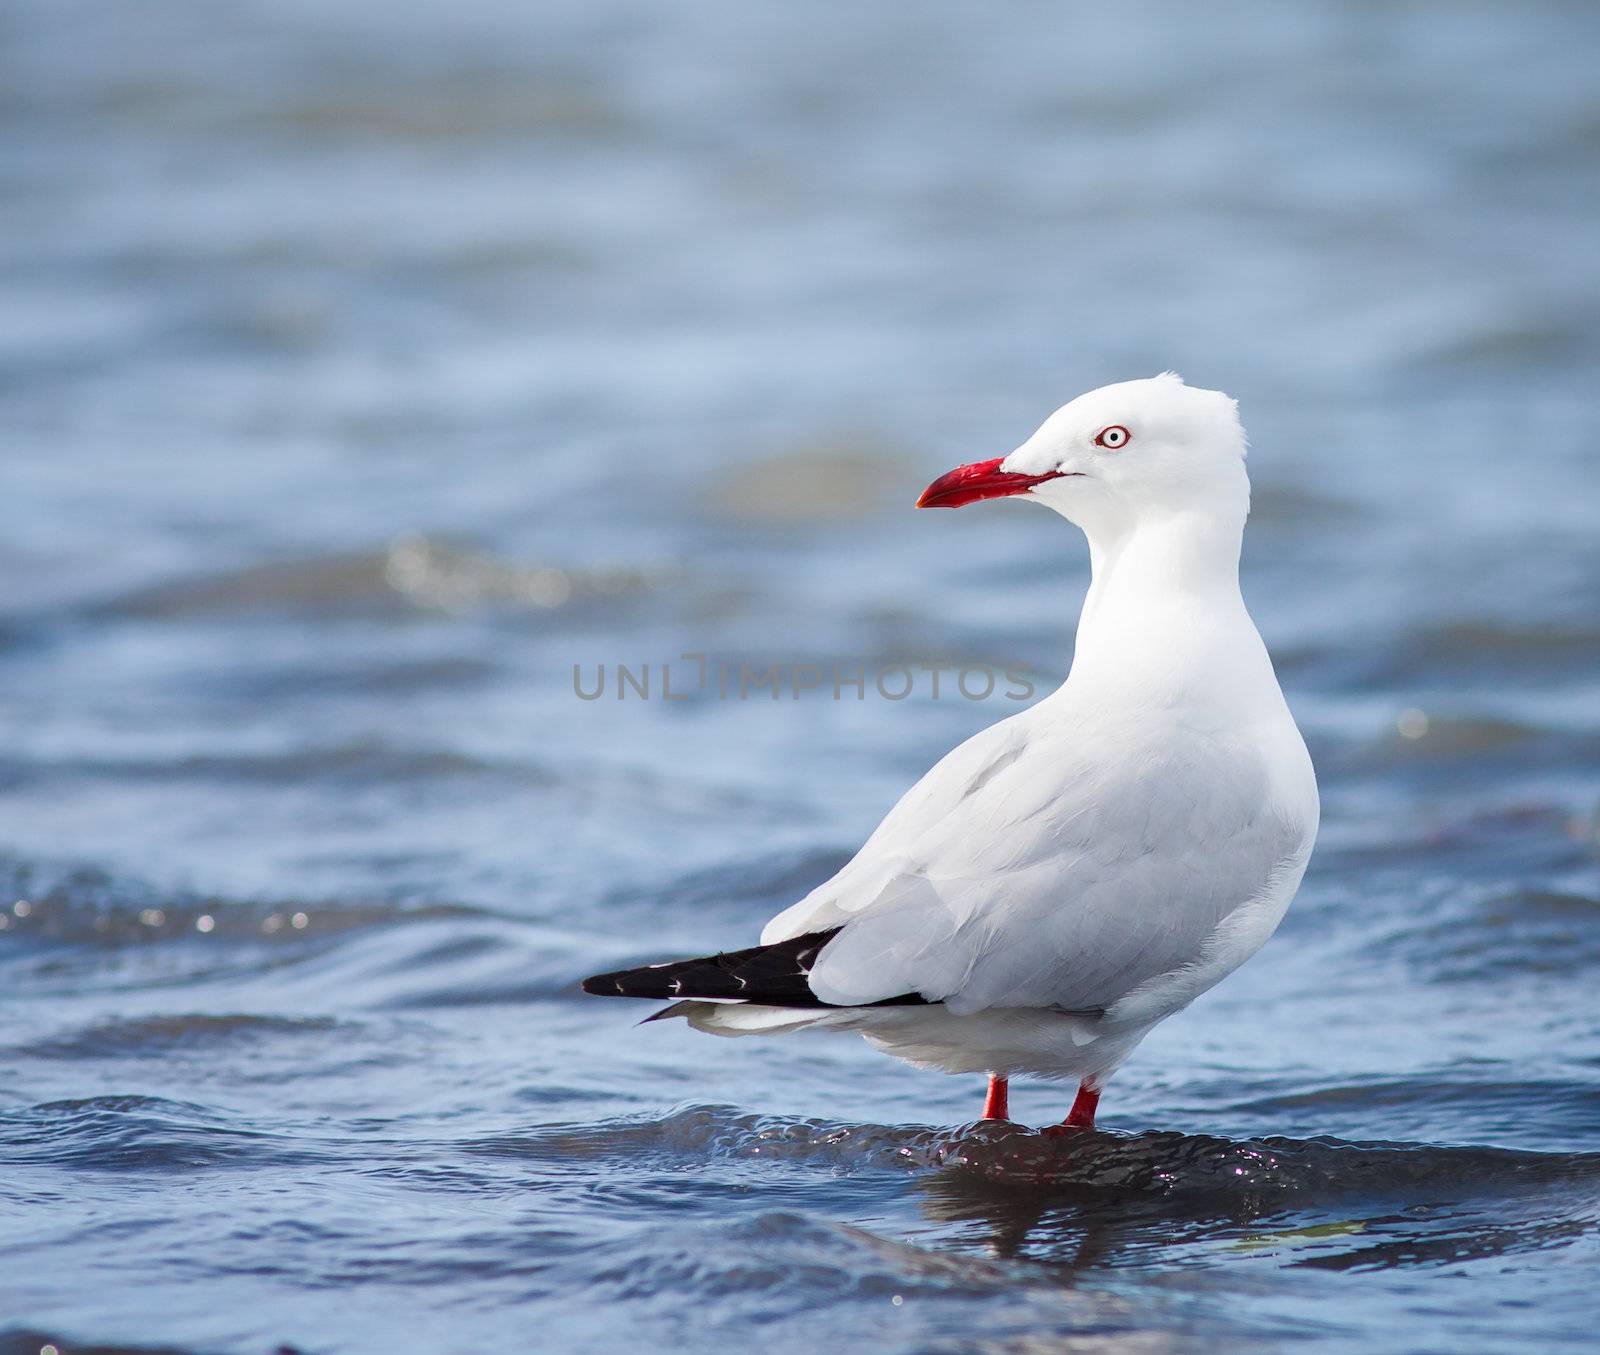 SIlver gull standing in water by Jaykayl